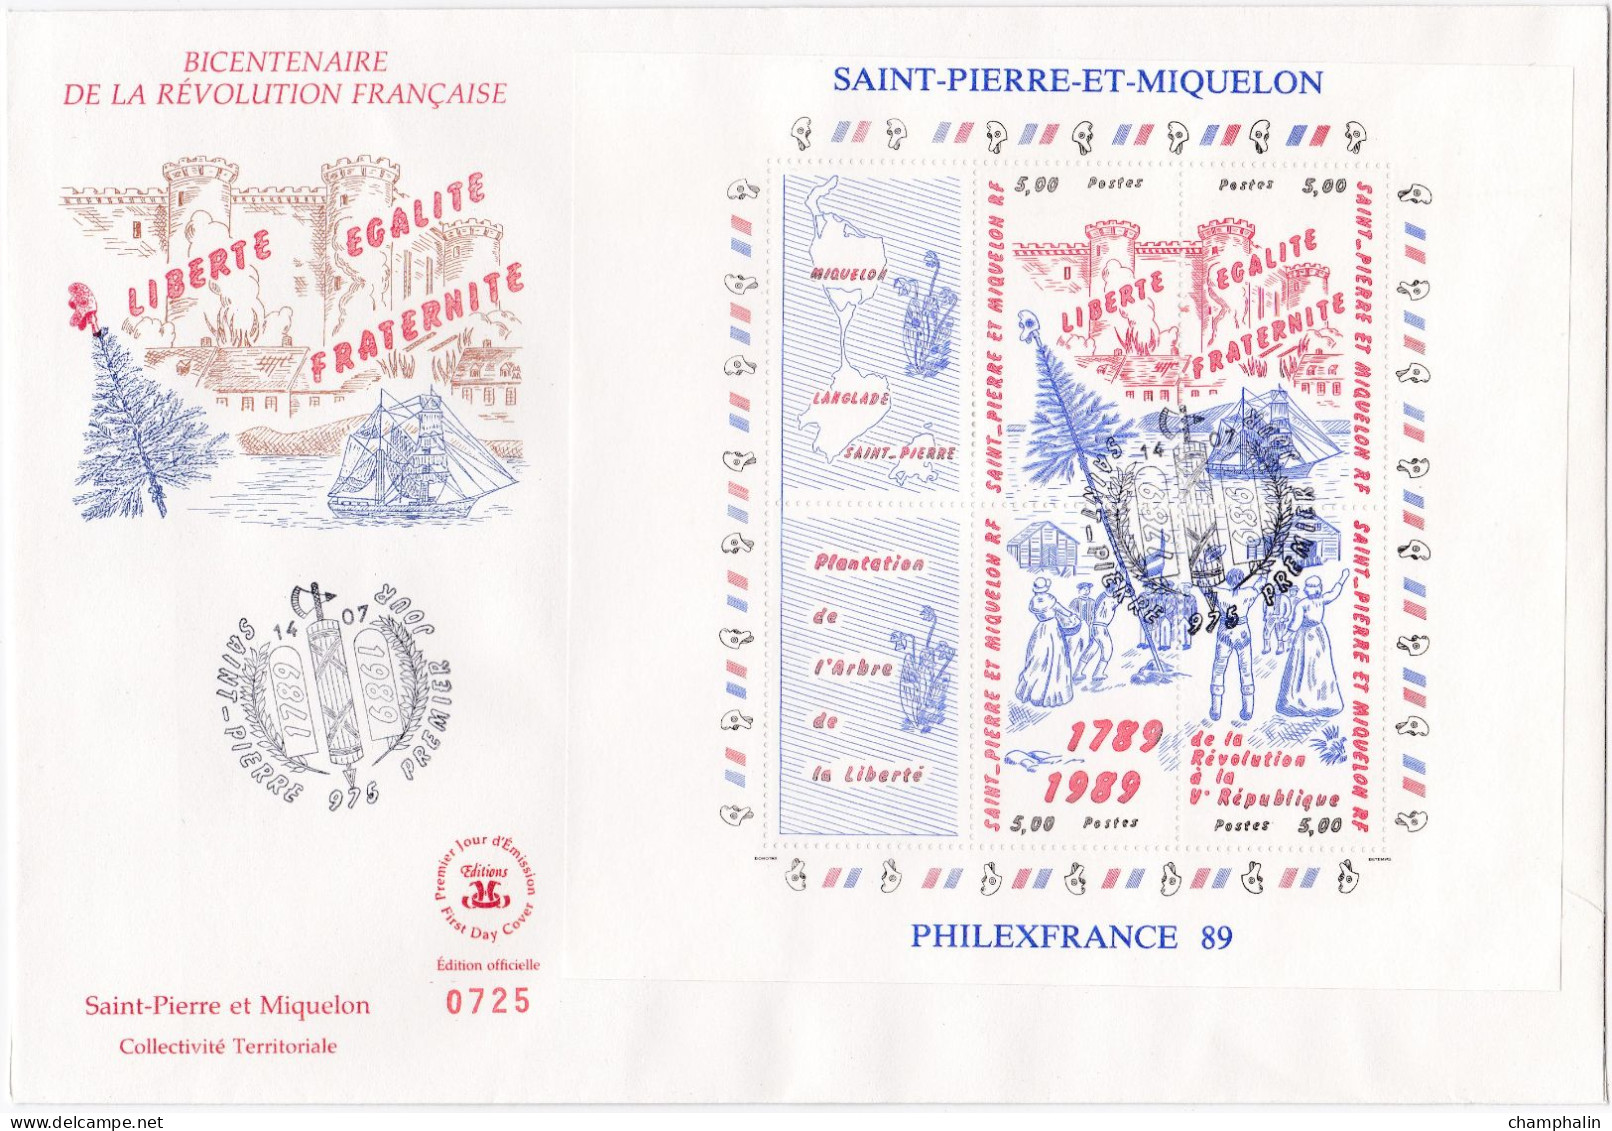 Saint-Pierre & Miquelon - Enveloppe FDC Bicentenaire Révolution Française - CAD 14 Juillet 1989 - Timbre YT Bloc N°3 - FDC